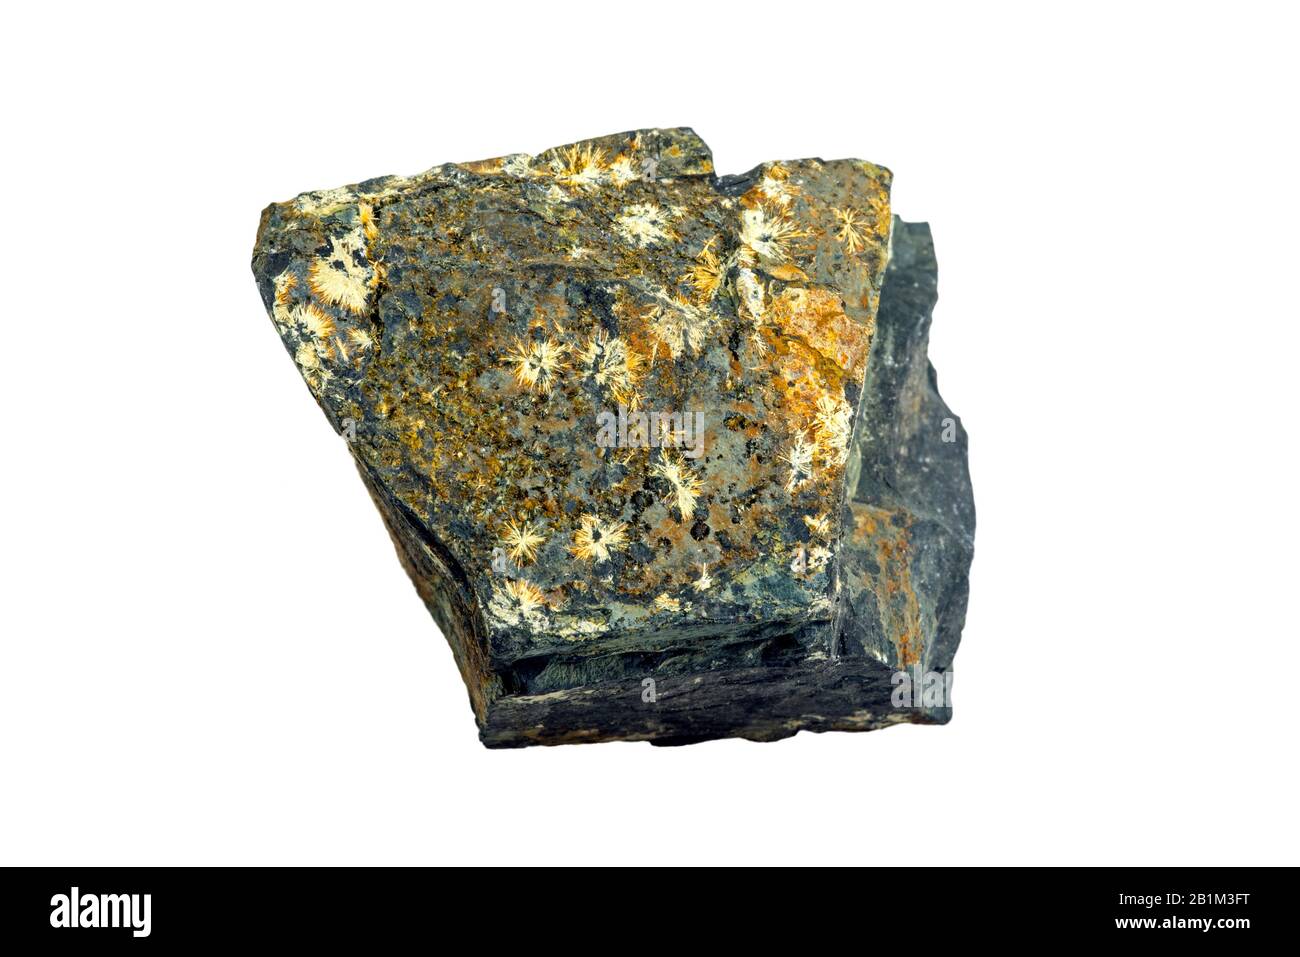 BraUnite, silicati minerali con Strunzite, fosfato minerale, trovato a Blaton, Belgio su sfondo bianco Foto Stock